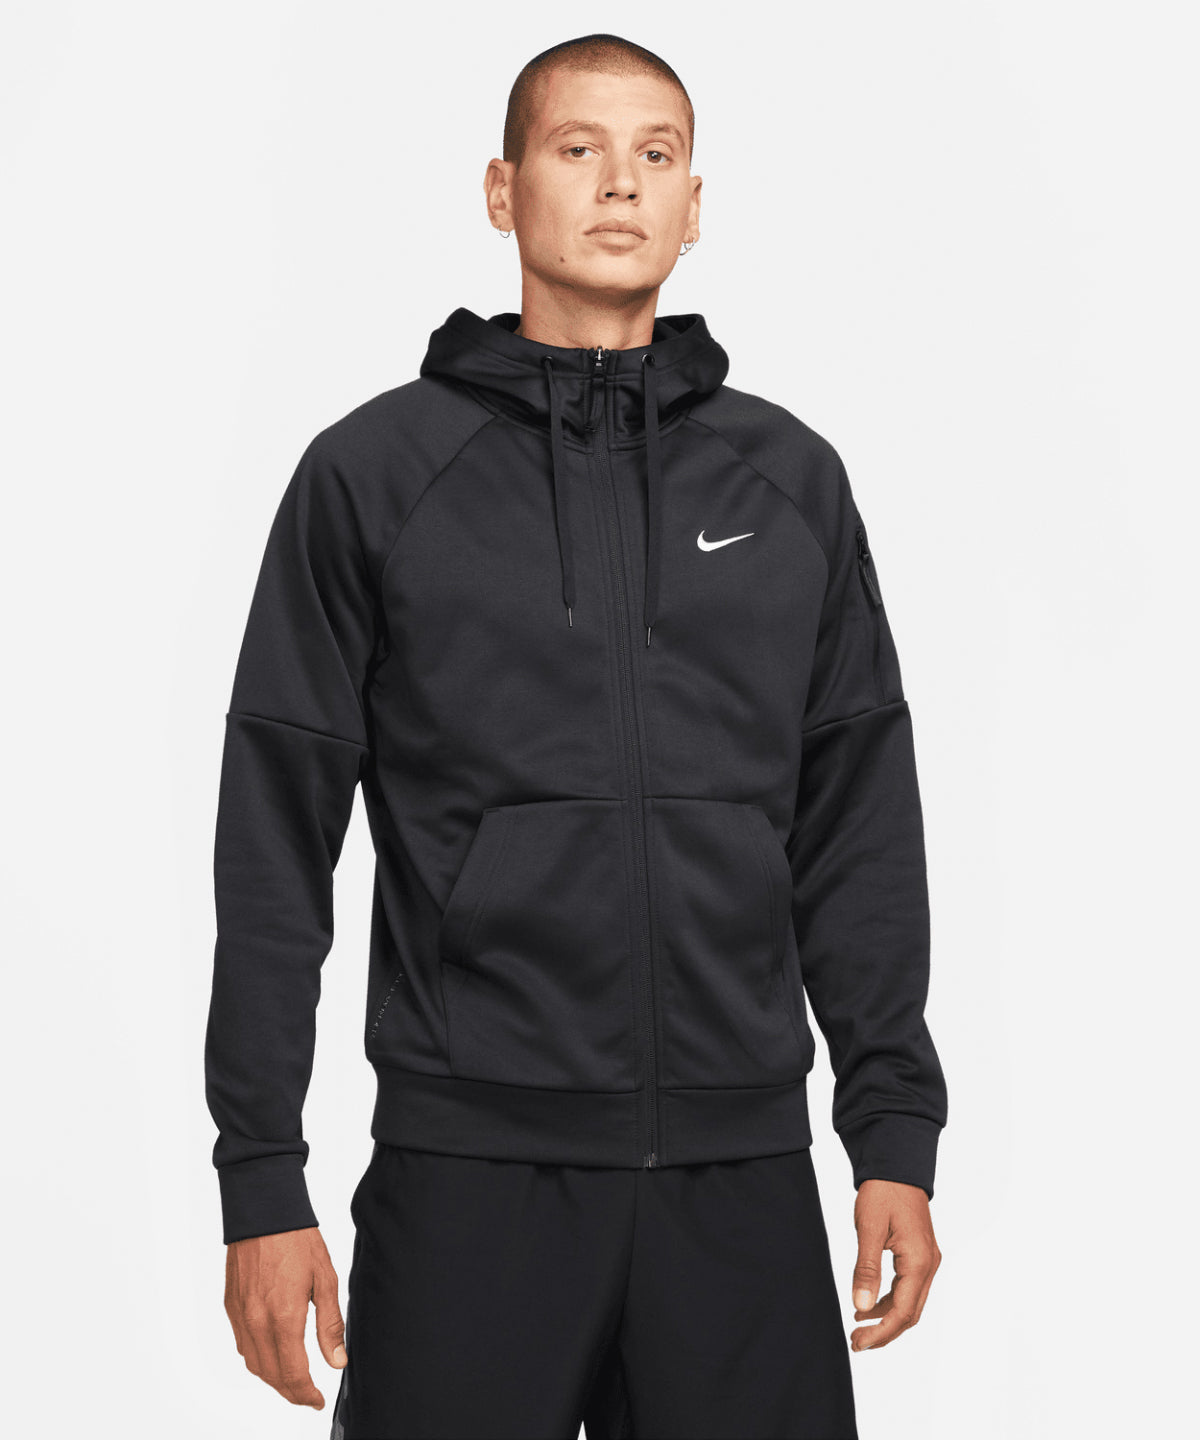 Hettupeysur - Nike Men’s Full-zip Fitness Hoodie